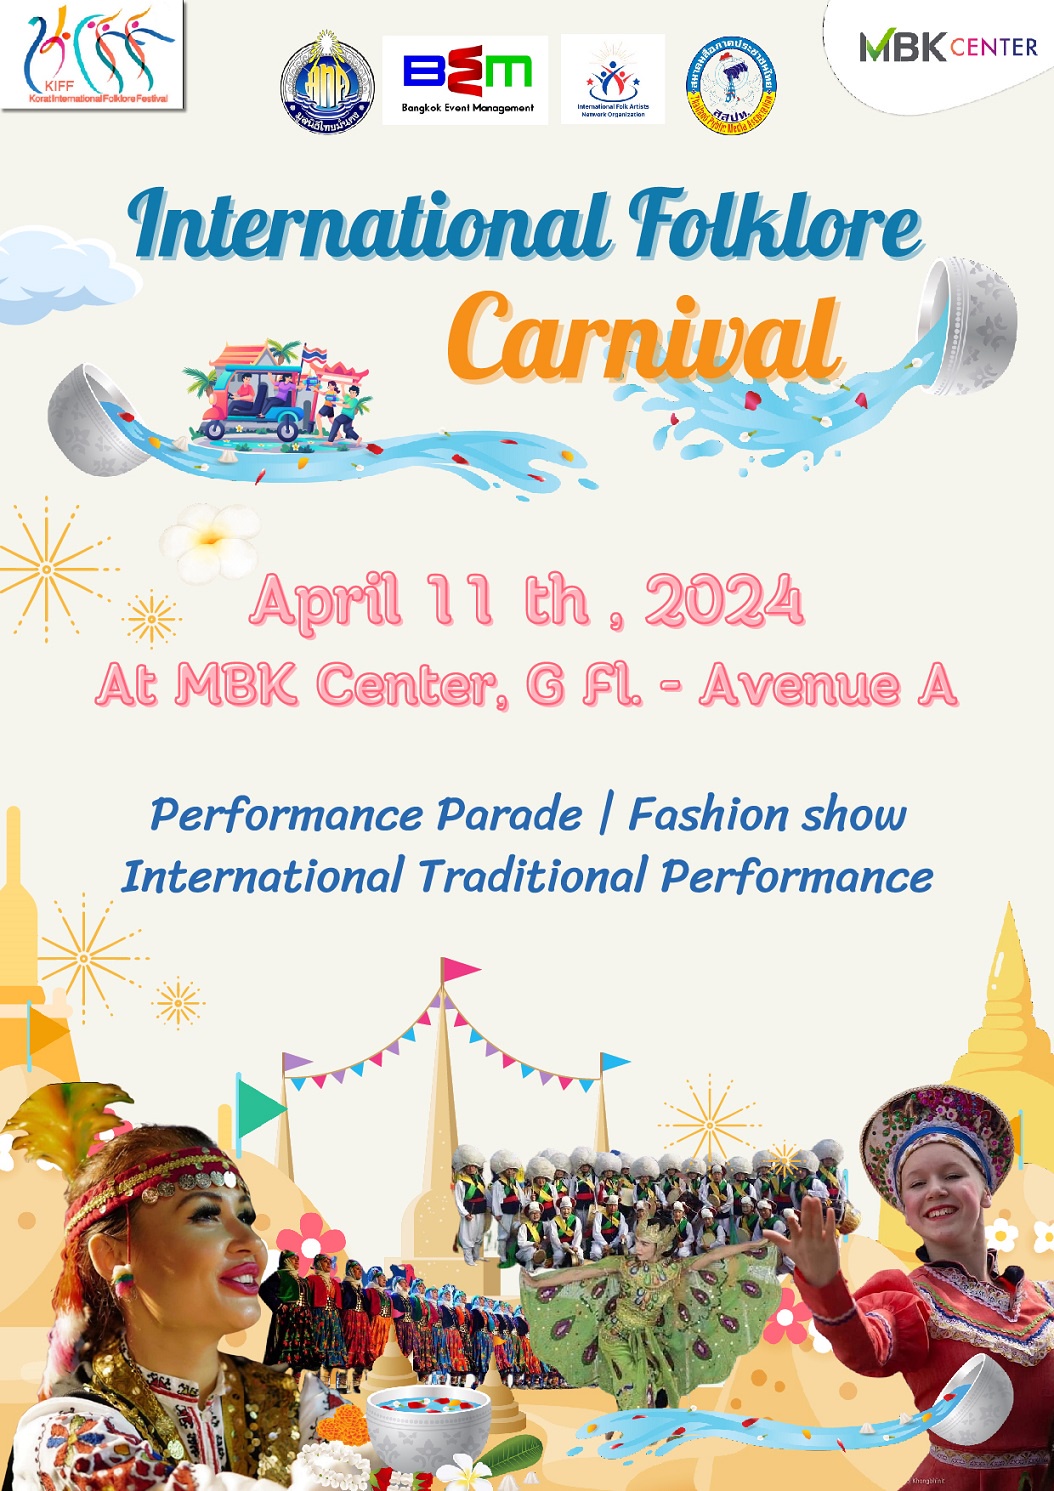 เอ็ม บี เค เซ็นเตอร์ ชวนชมการแสดงแลกเปลี่ยนศิลปวัฒนธรรมพื้นบ้านนานาชาติ ร่วมเฉลิมฉลองเทศกาลสงกรานต์มรดกโลกของไทย ในงาน International Folklore Carnival